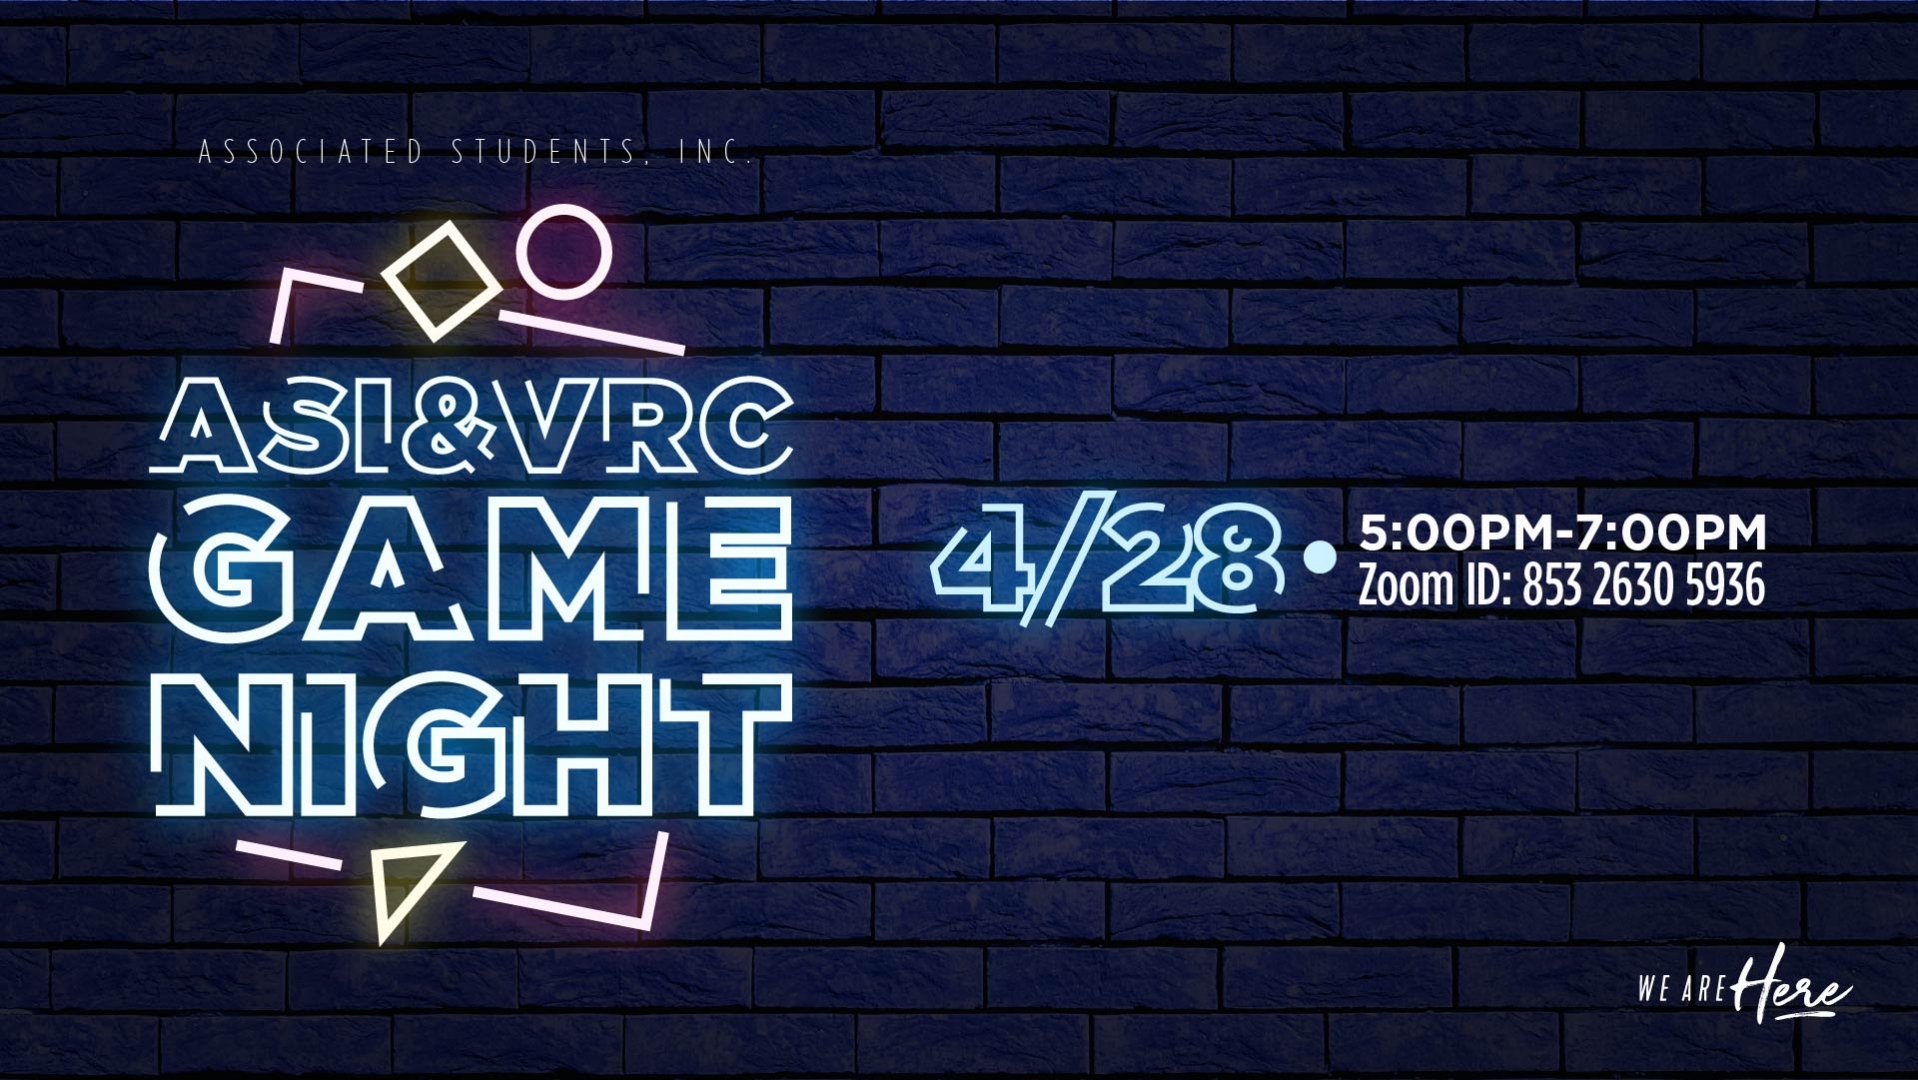 ASI & VRC Game Night